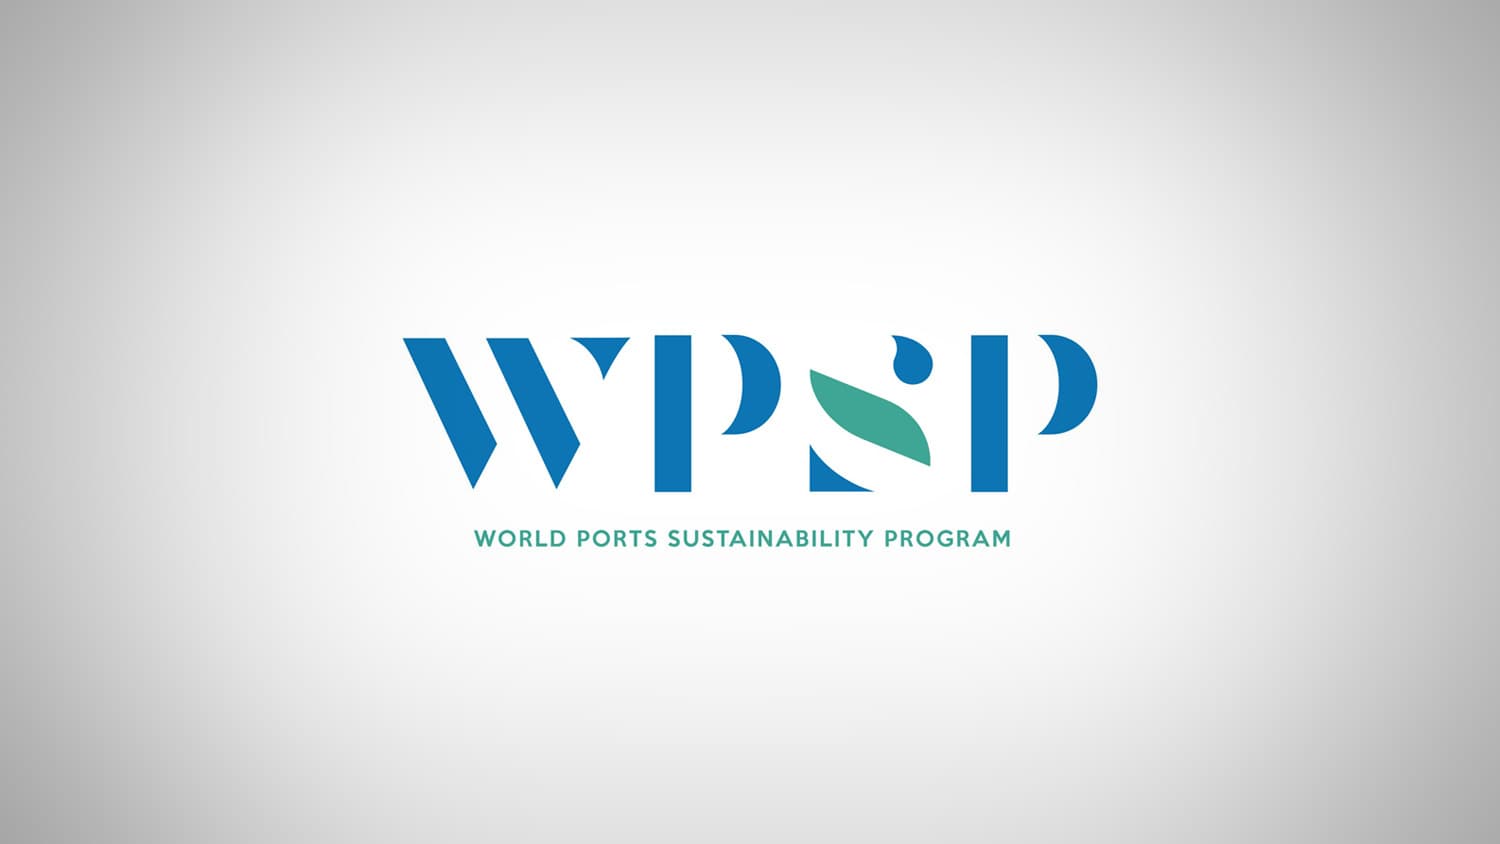 World Ports Sustainability Program